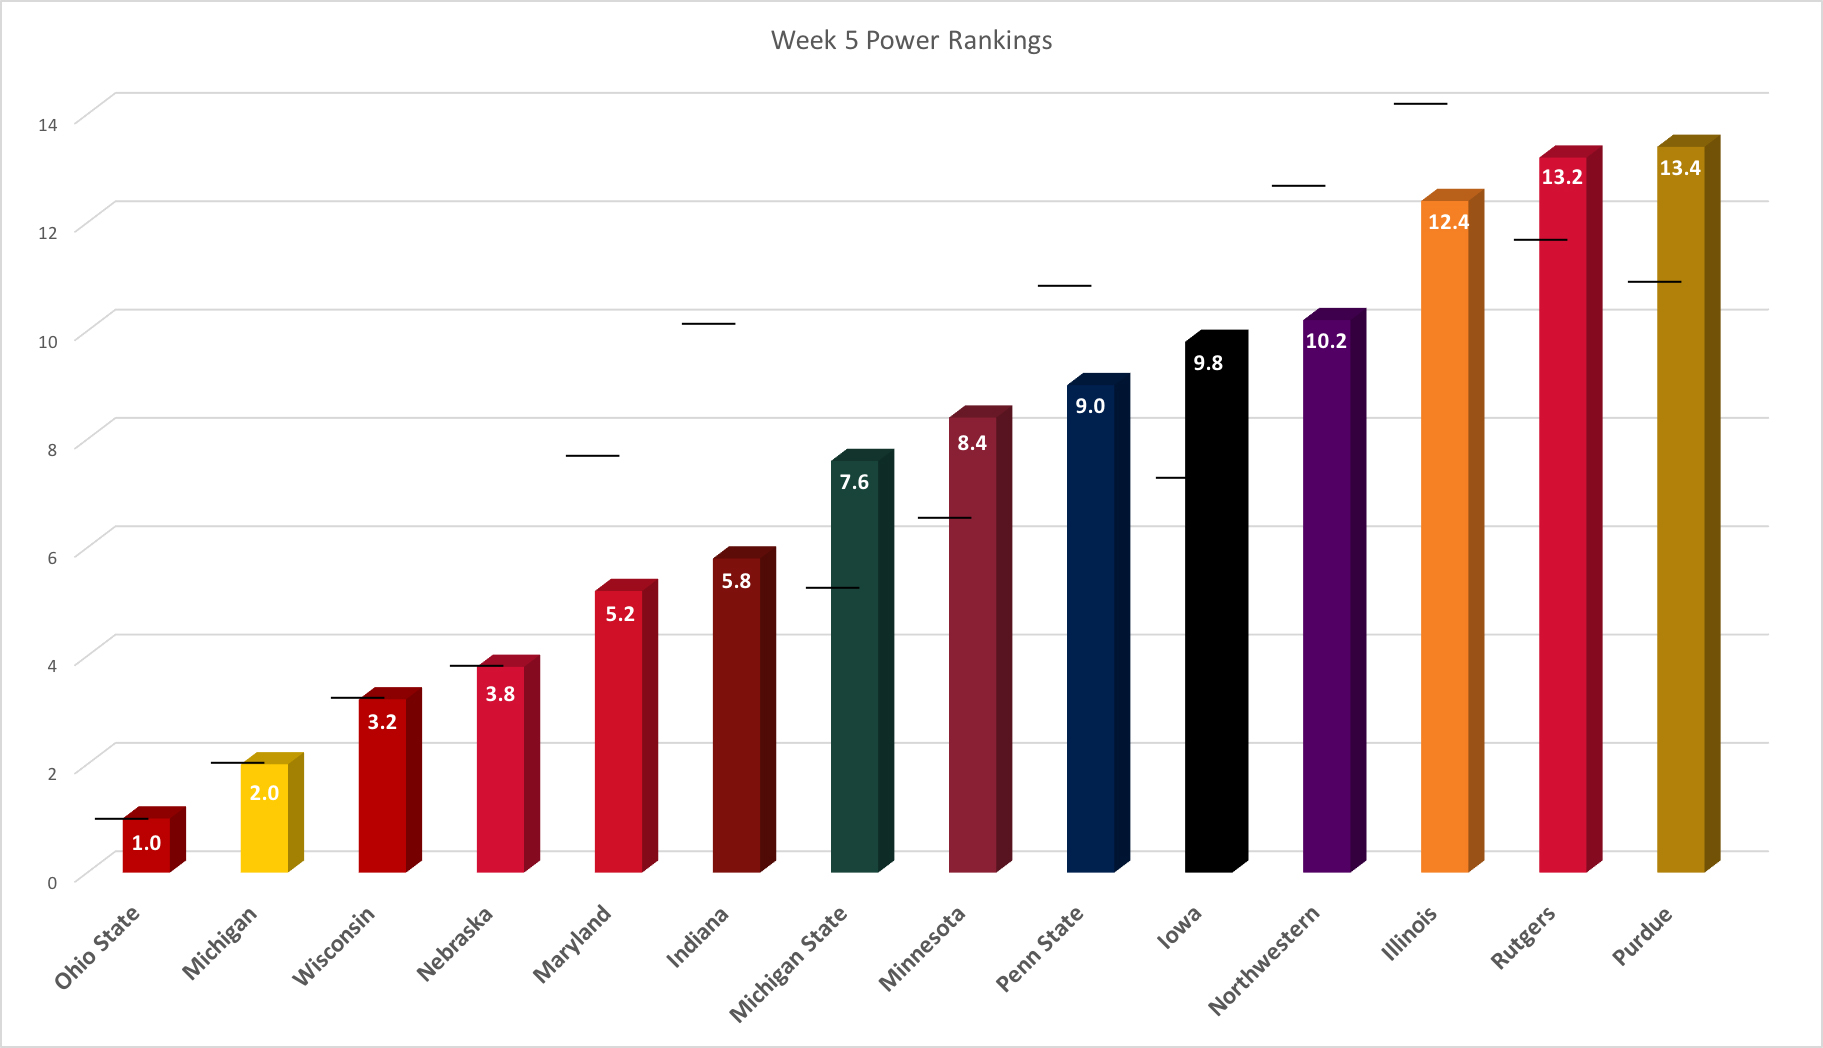 Big Ten power rankings 2016 Week 5